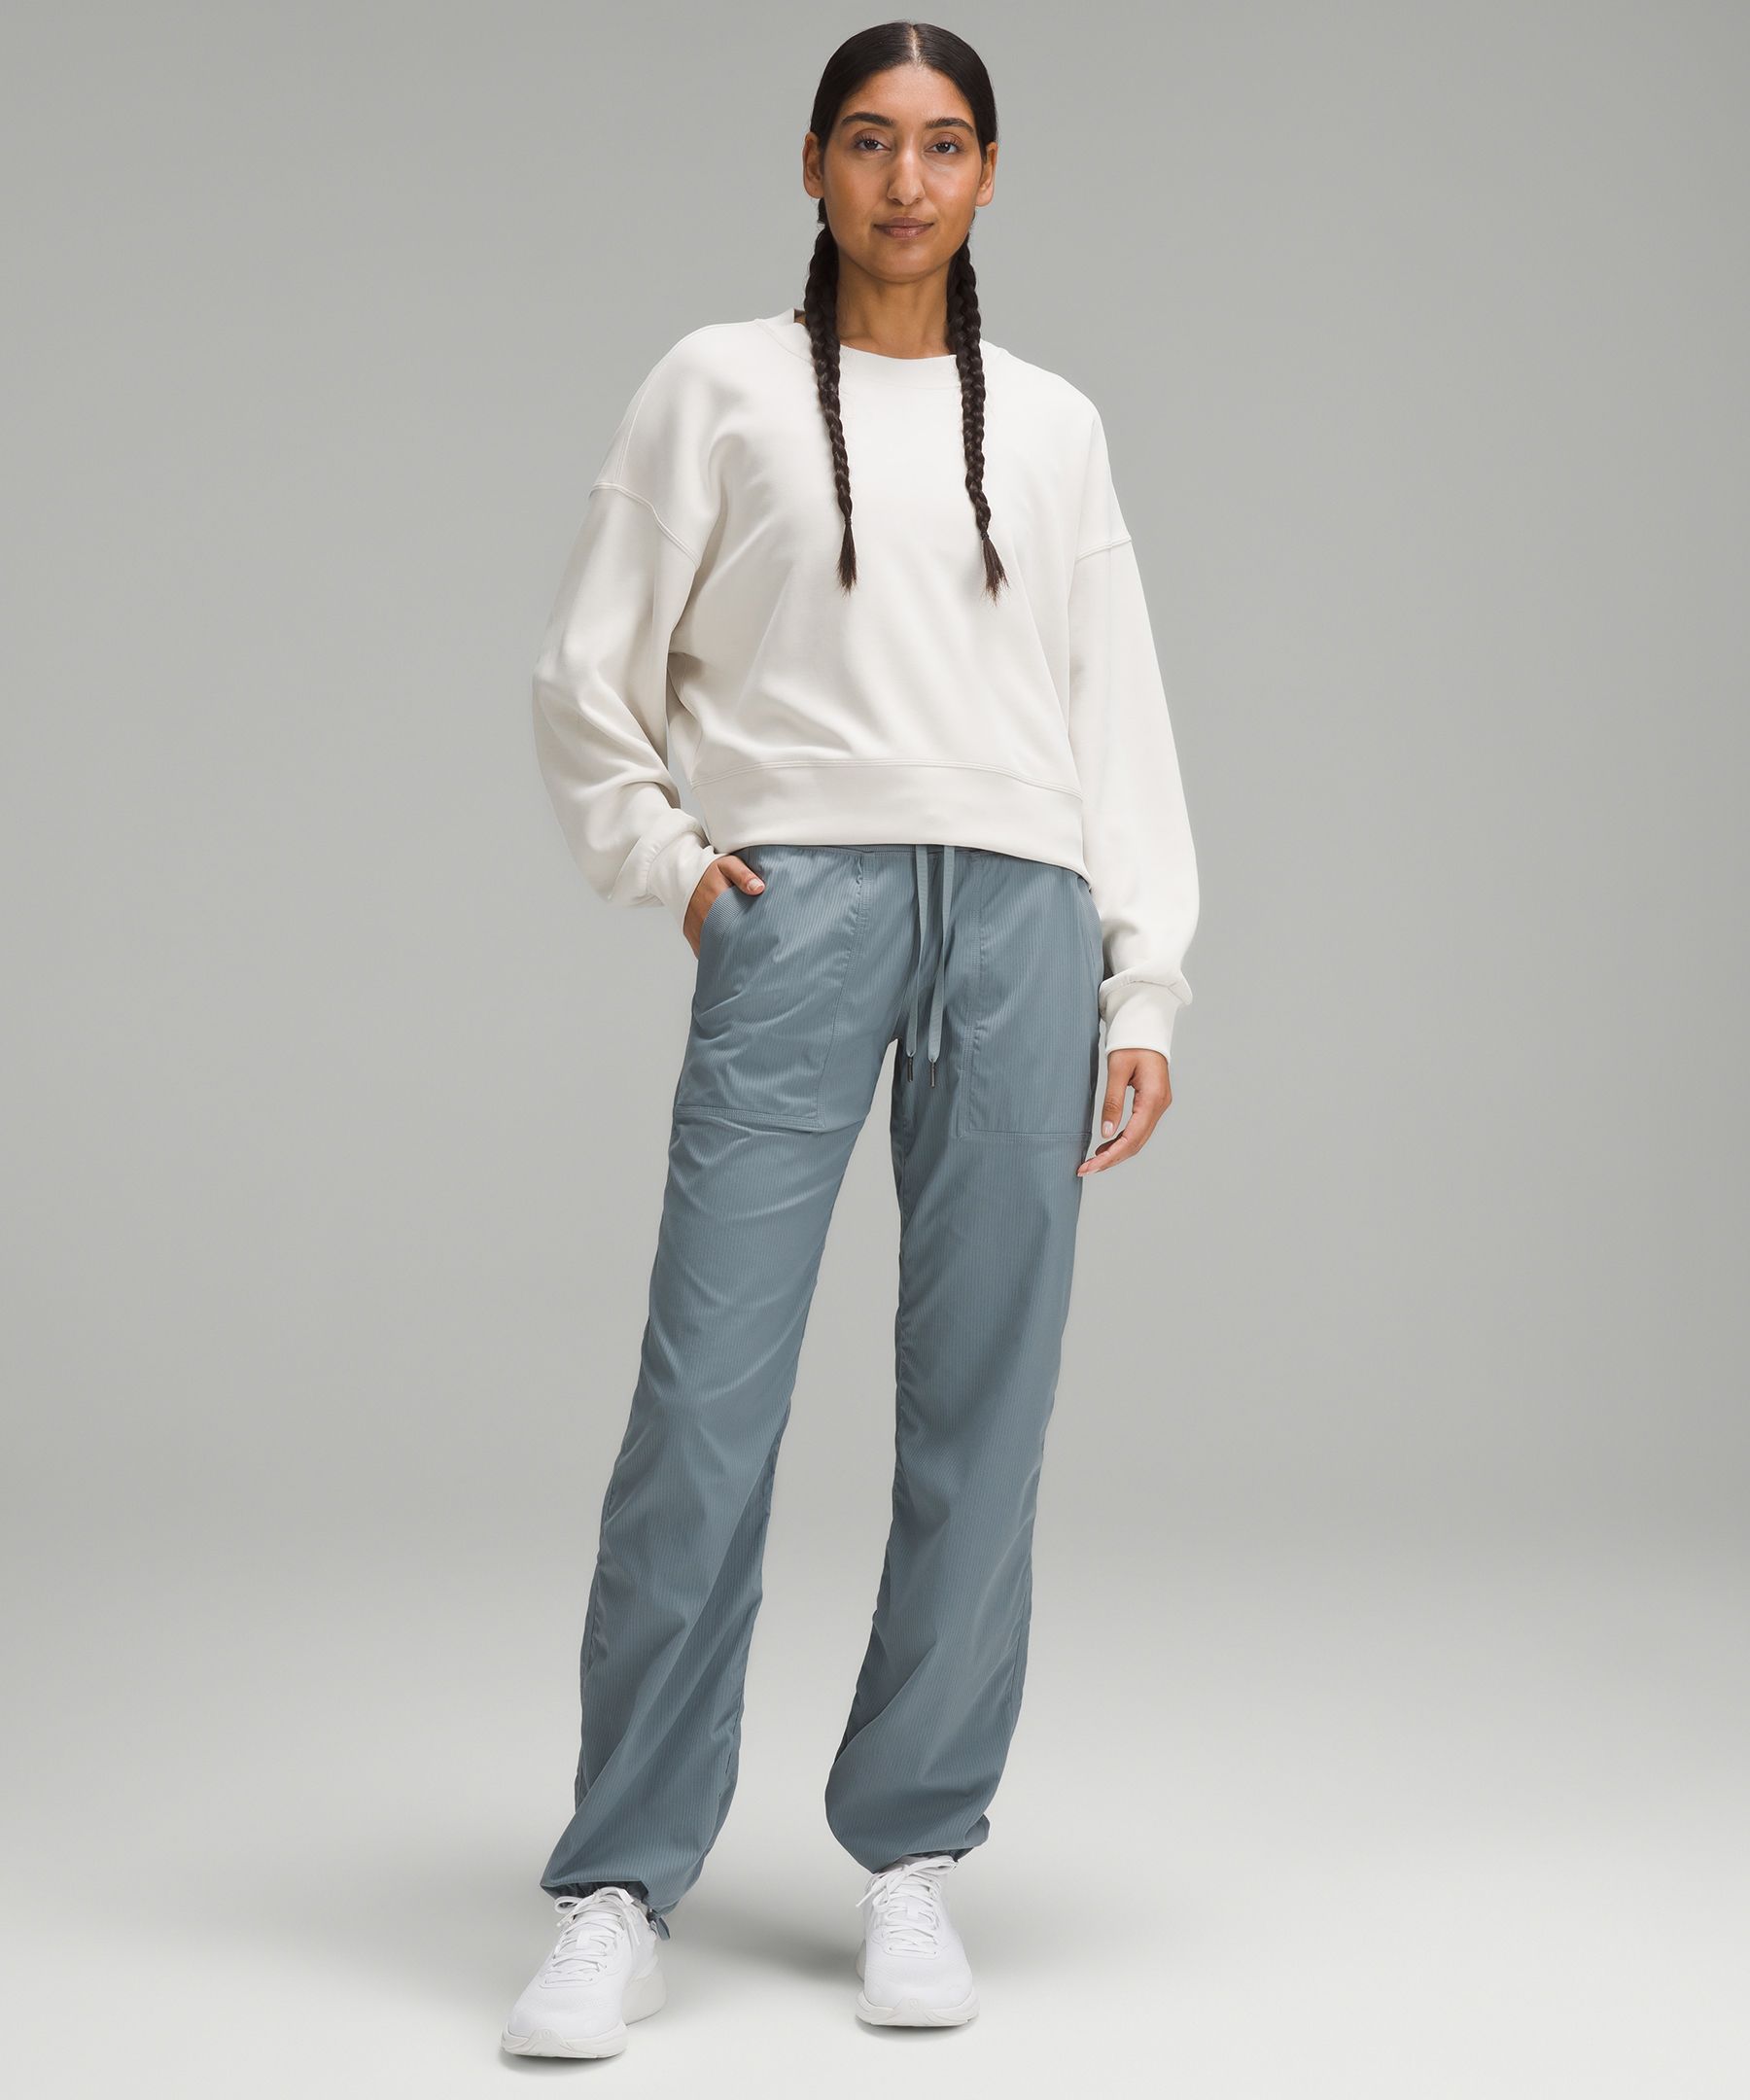 Lululemon Size 4 Studio Pants III (Regular) in Gray Style W5AESR